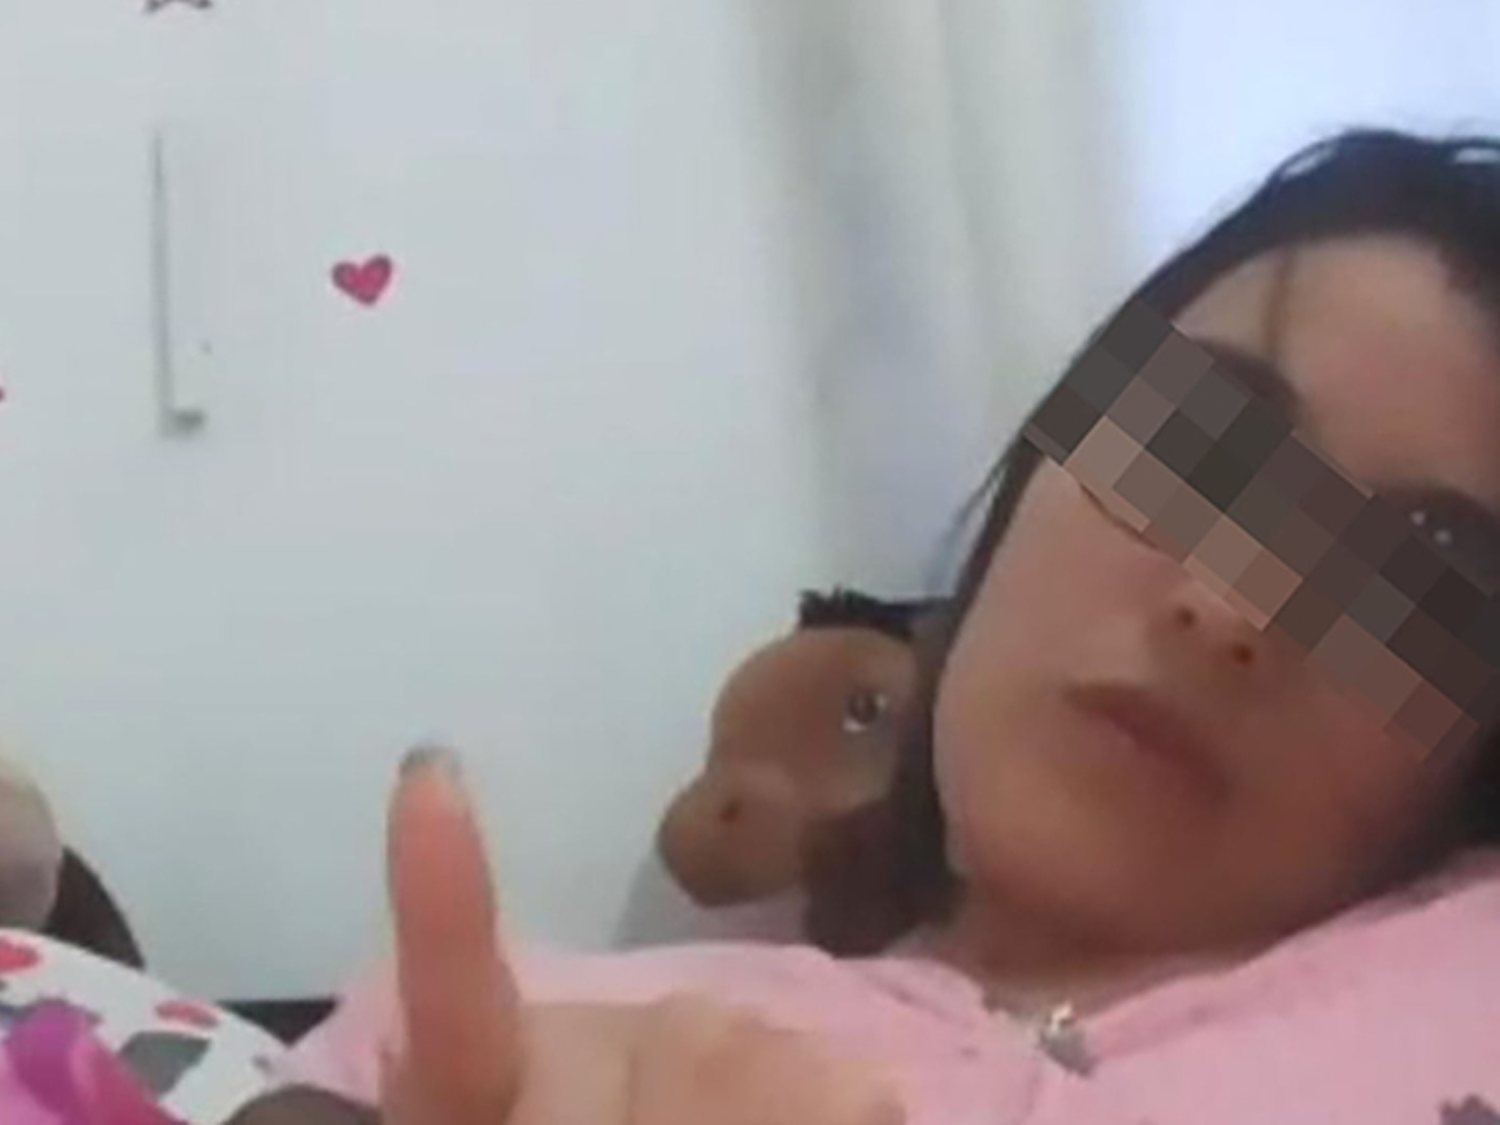 Detenida una profesora de instituto por enviar un vídeo íntimo a un alumno menor de edad